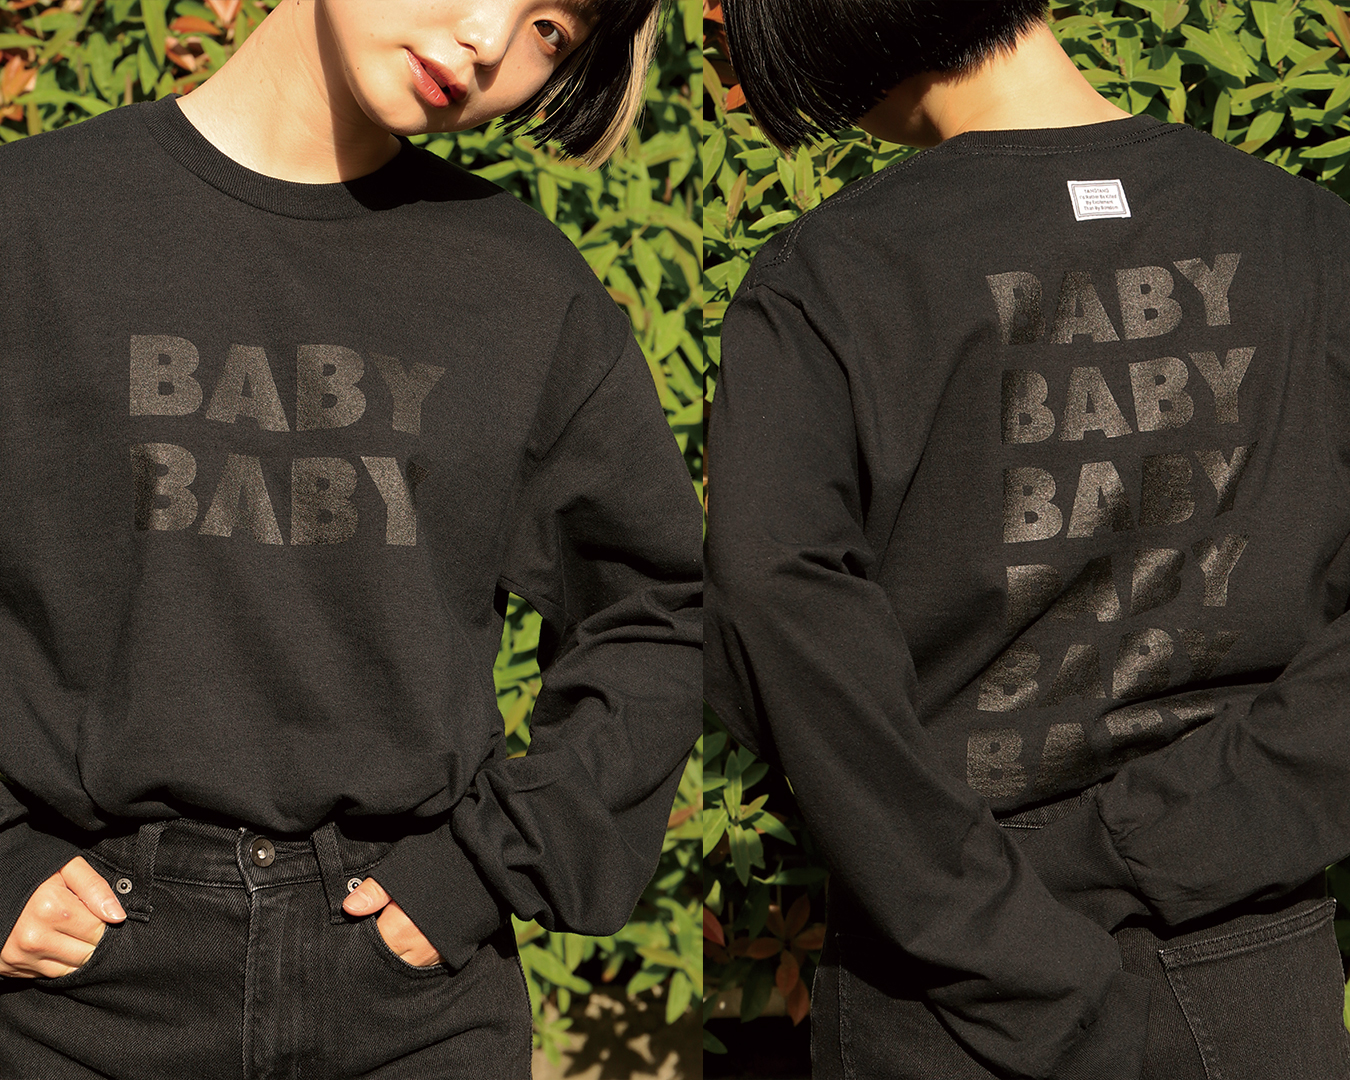 銀杏BOYZ×TANGTANG 復刻 BABY BABY Tシャツ / Mサイズ